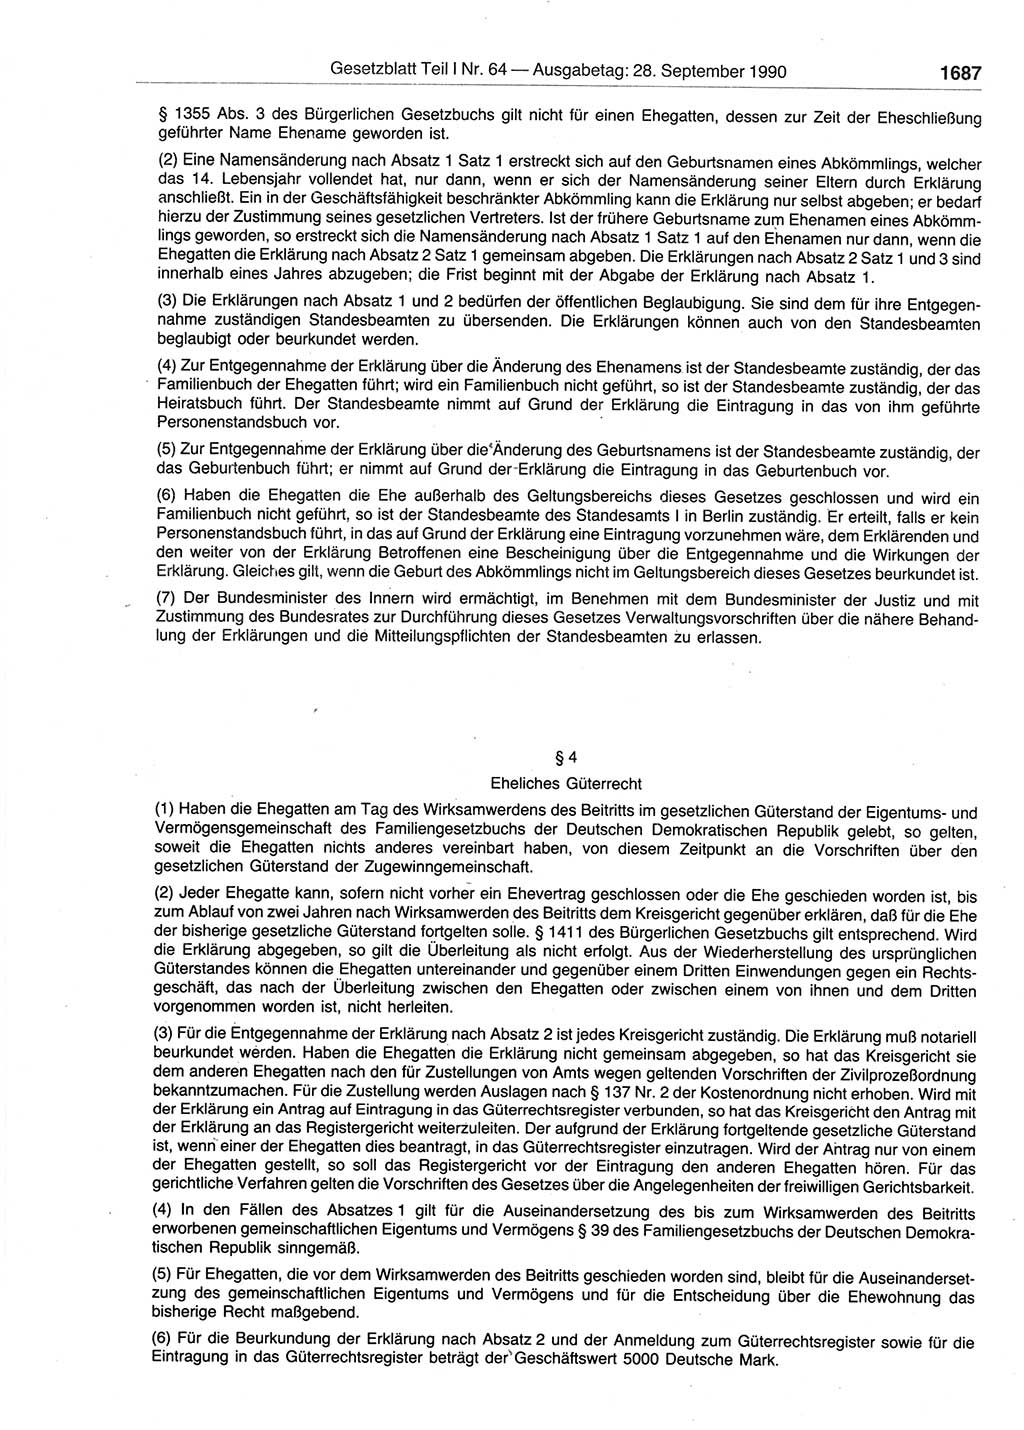 Gesetzblatt (GBl.) der Deutschen Demokratischen Republik (DDR) Teil Ⅰ 1990, Seite 1687 (GBl. DDR Ⅰ 1990, S. 1687)